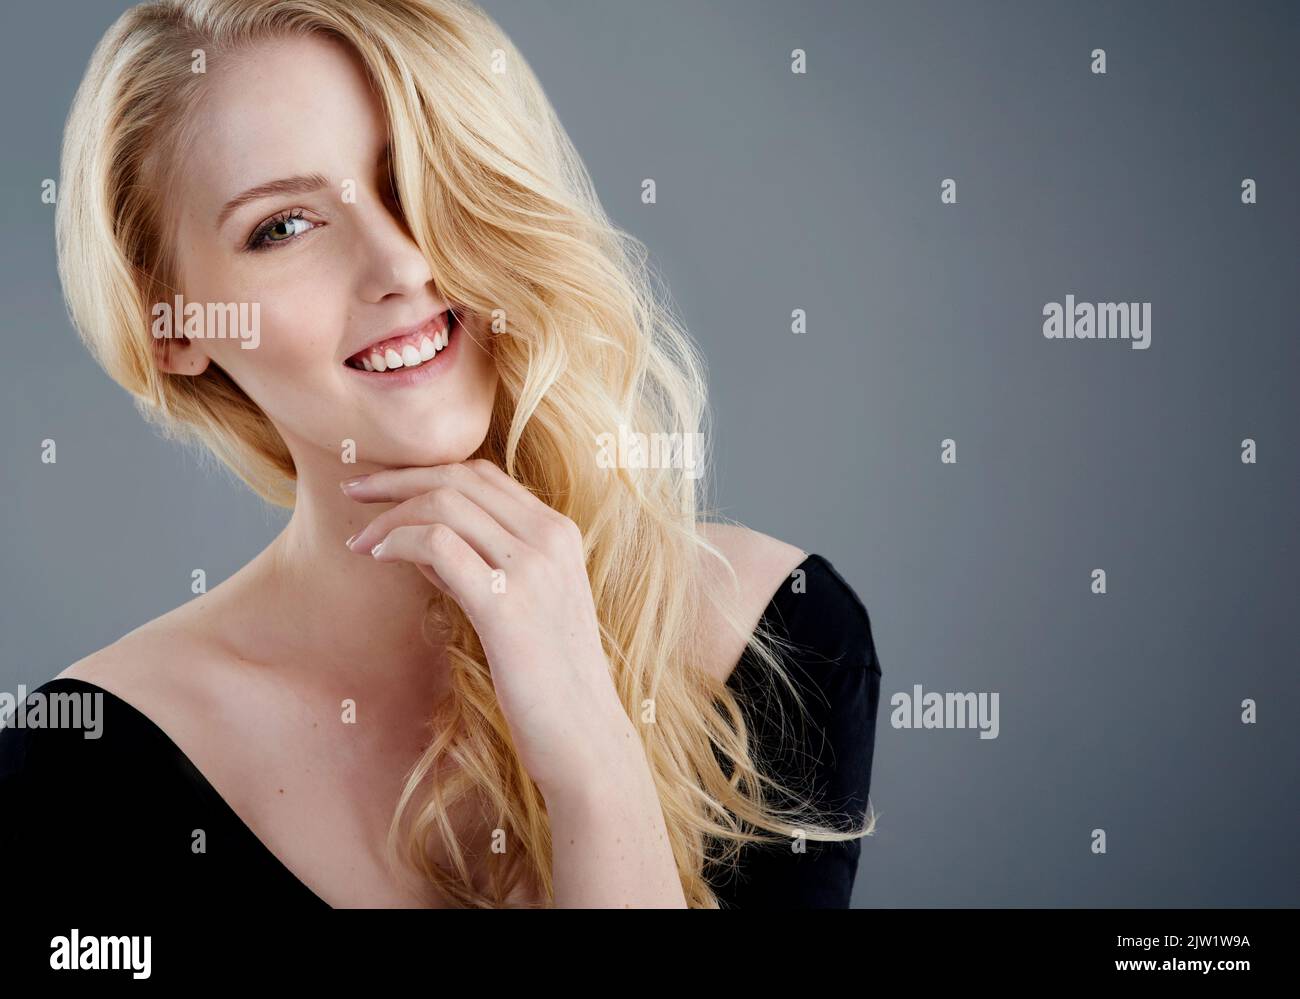 Capelli meravigliosi e un sorriso grande. Studio ritratto di una giovane donna attraente con bei capelli biondi lunghi che si posano su uno sfondo grigio. Foto Stock